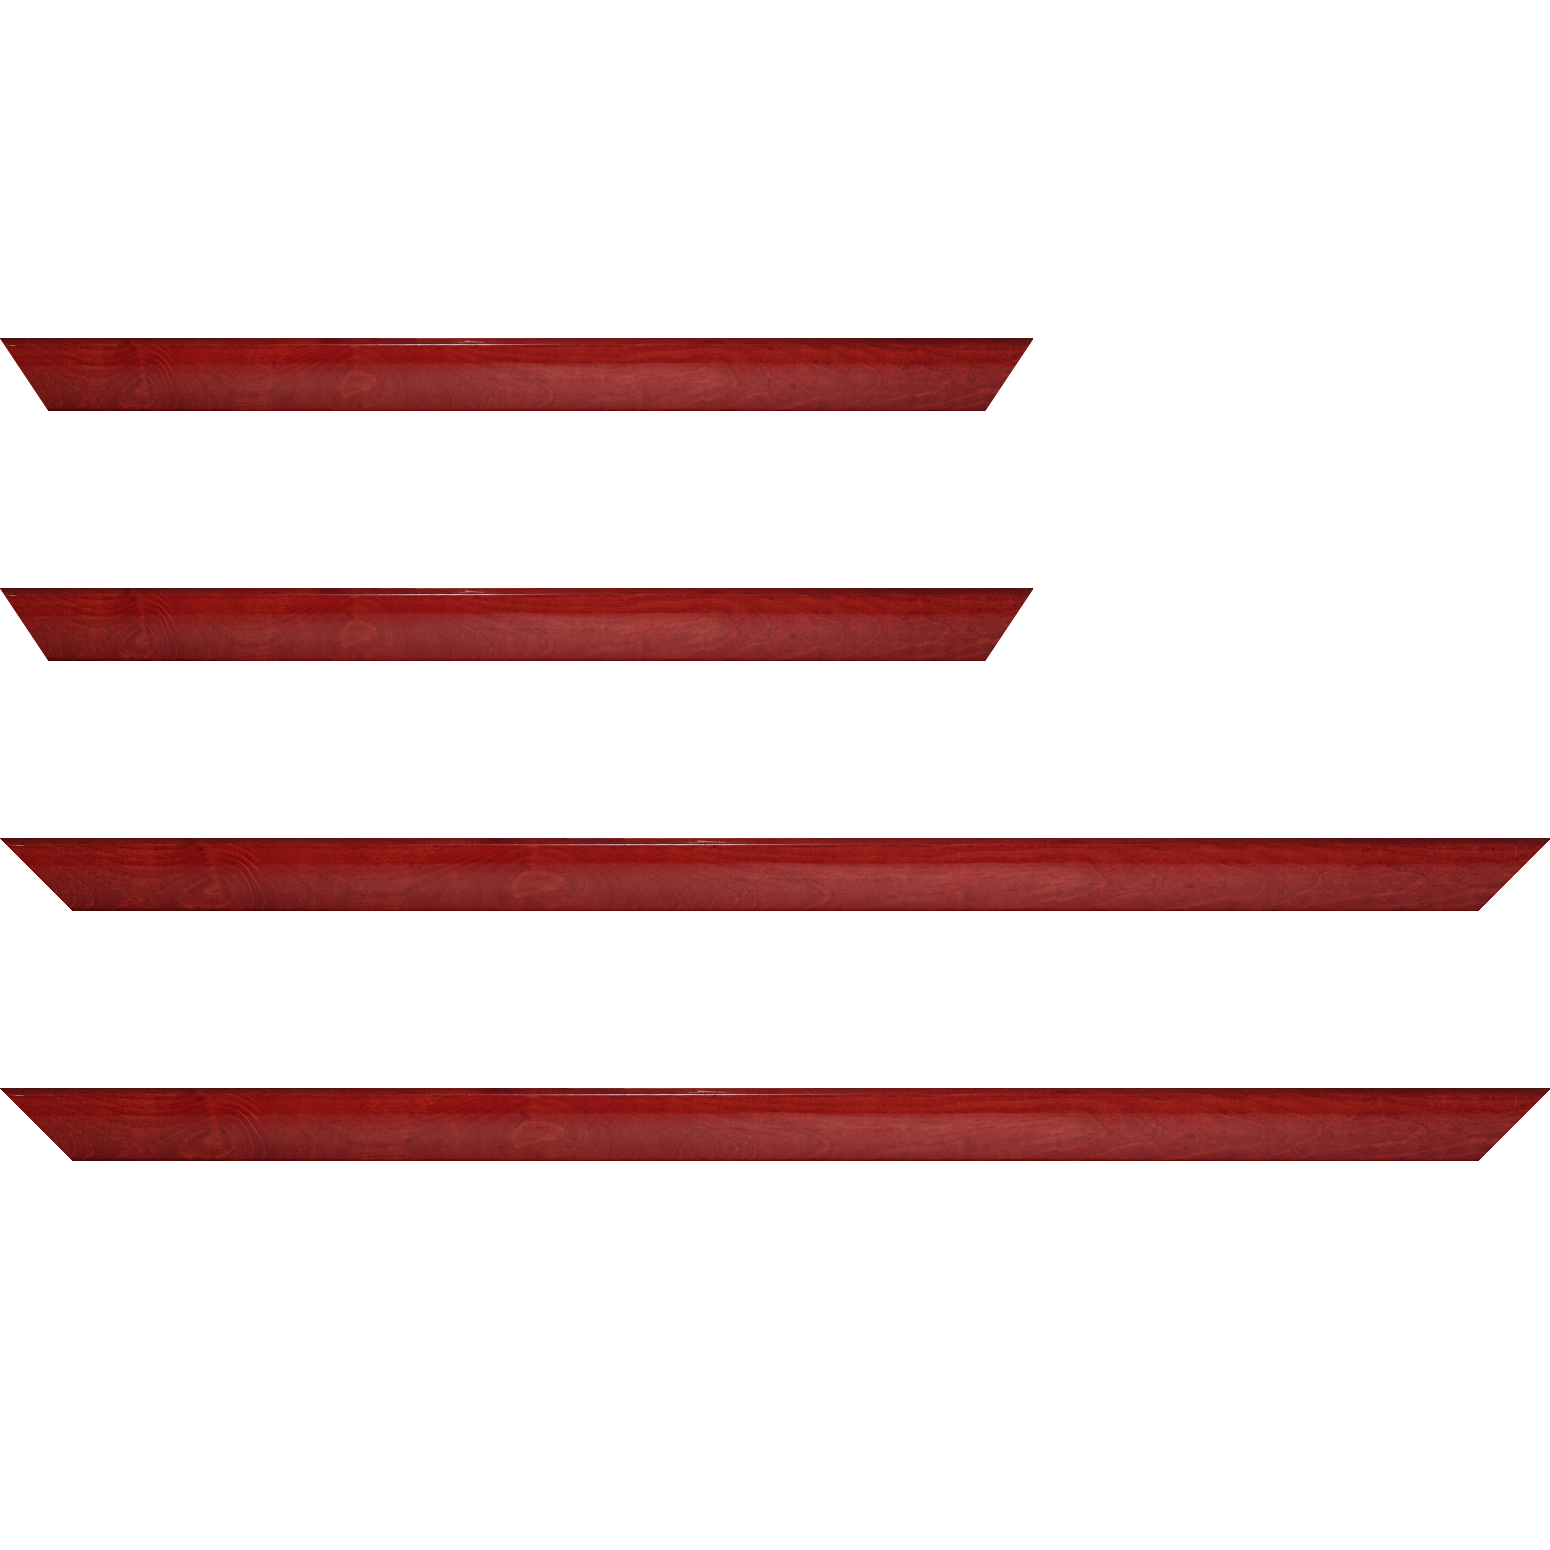 Baguette bois profil arrondi en pente plongeant largeur 2.4cm couleur rouge cerise finition vernis brillant,veine du bois  apparent (pin) , - 70x100